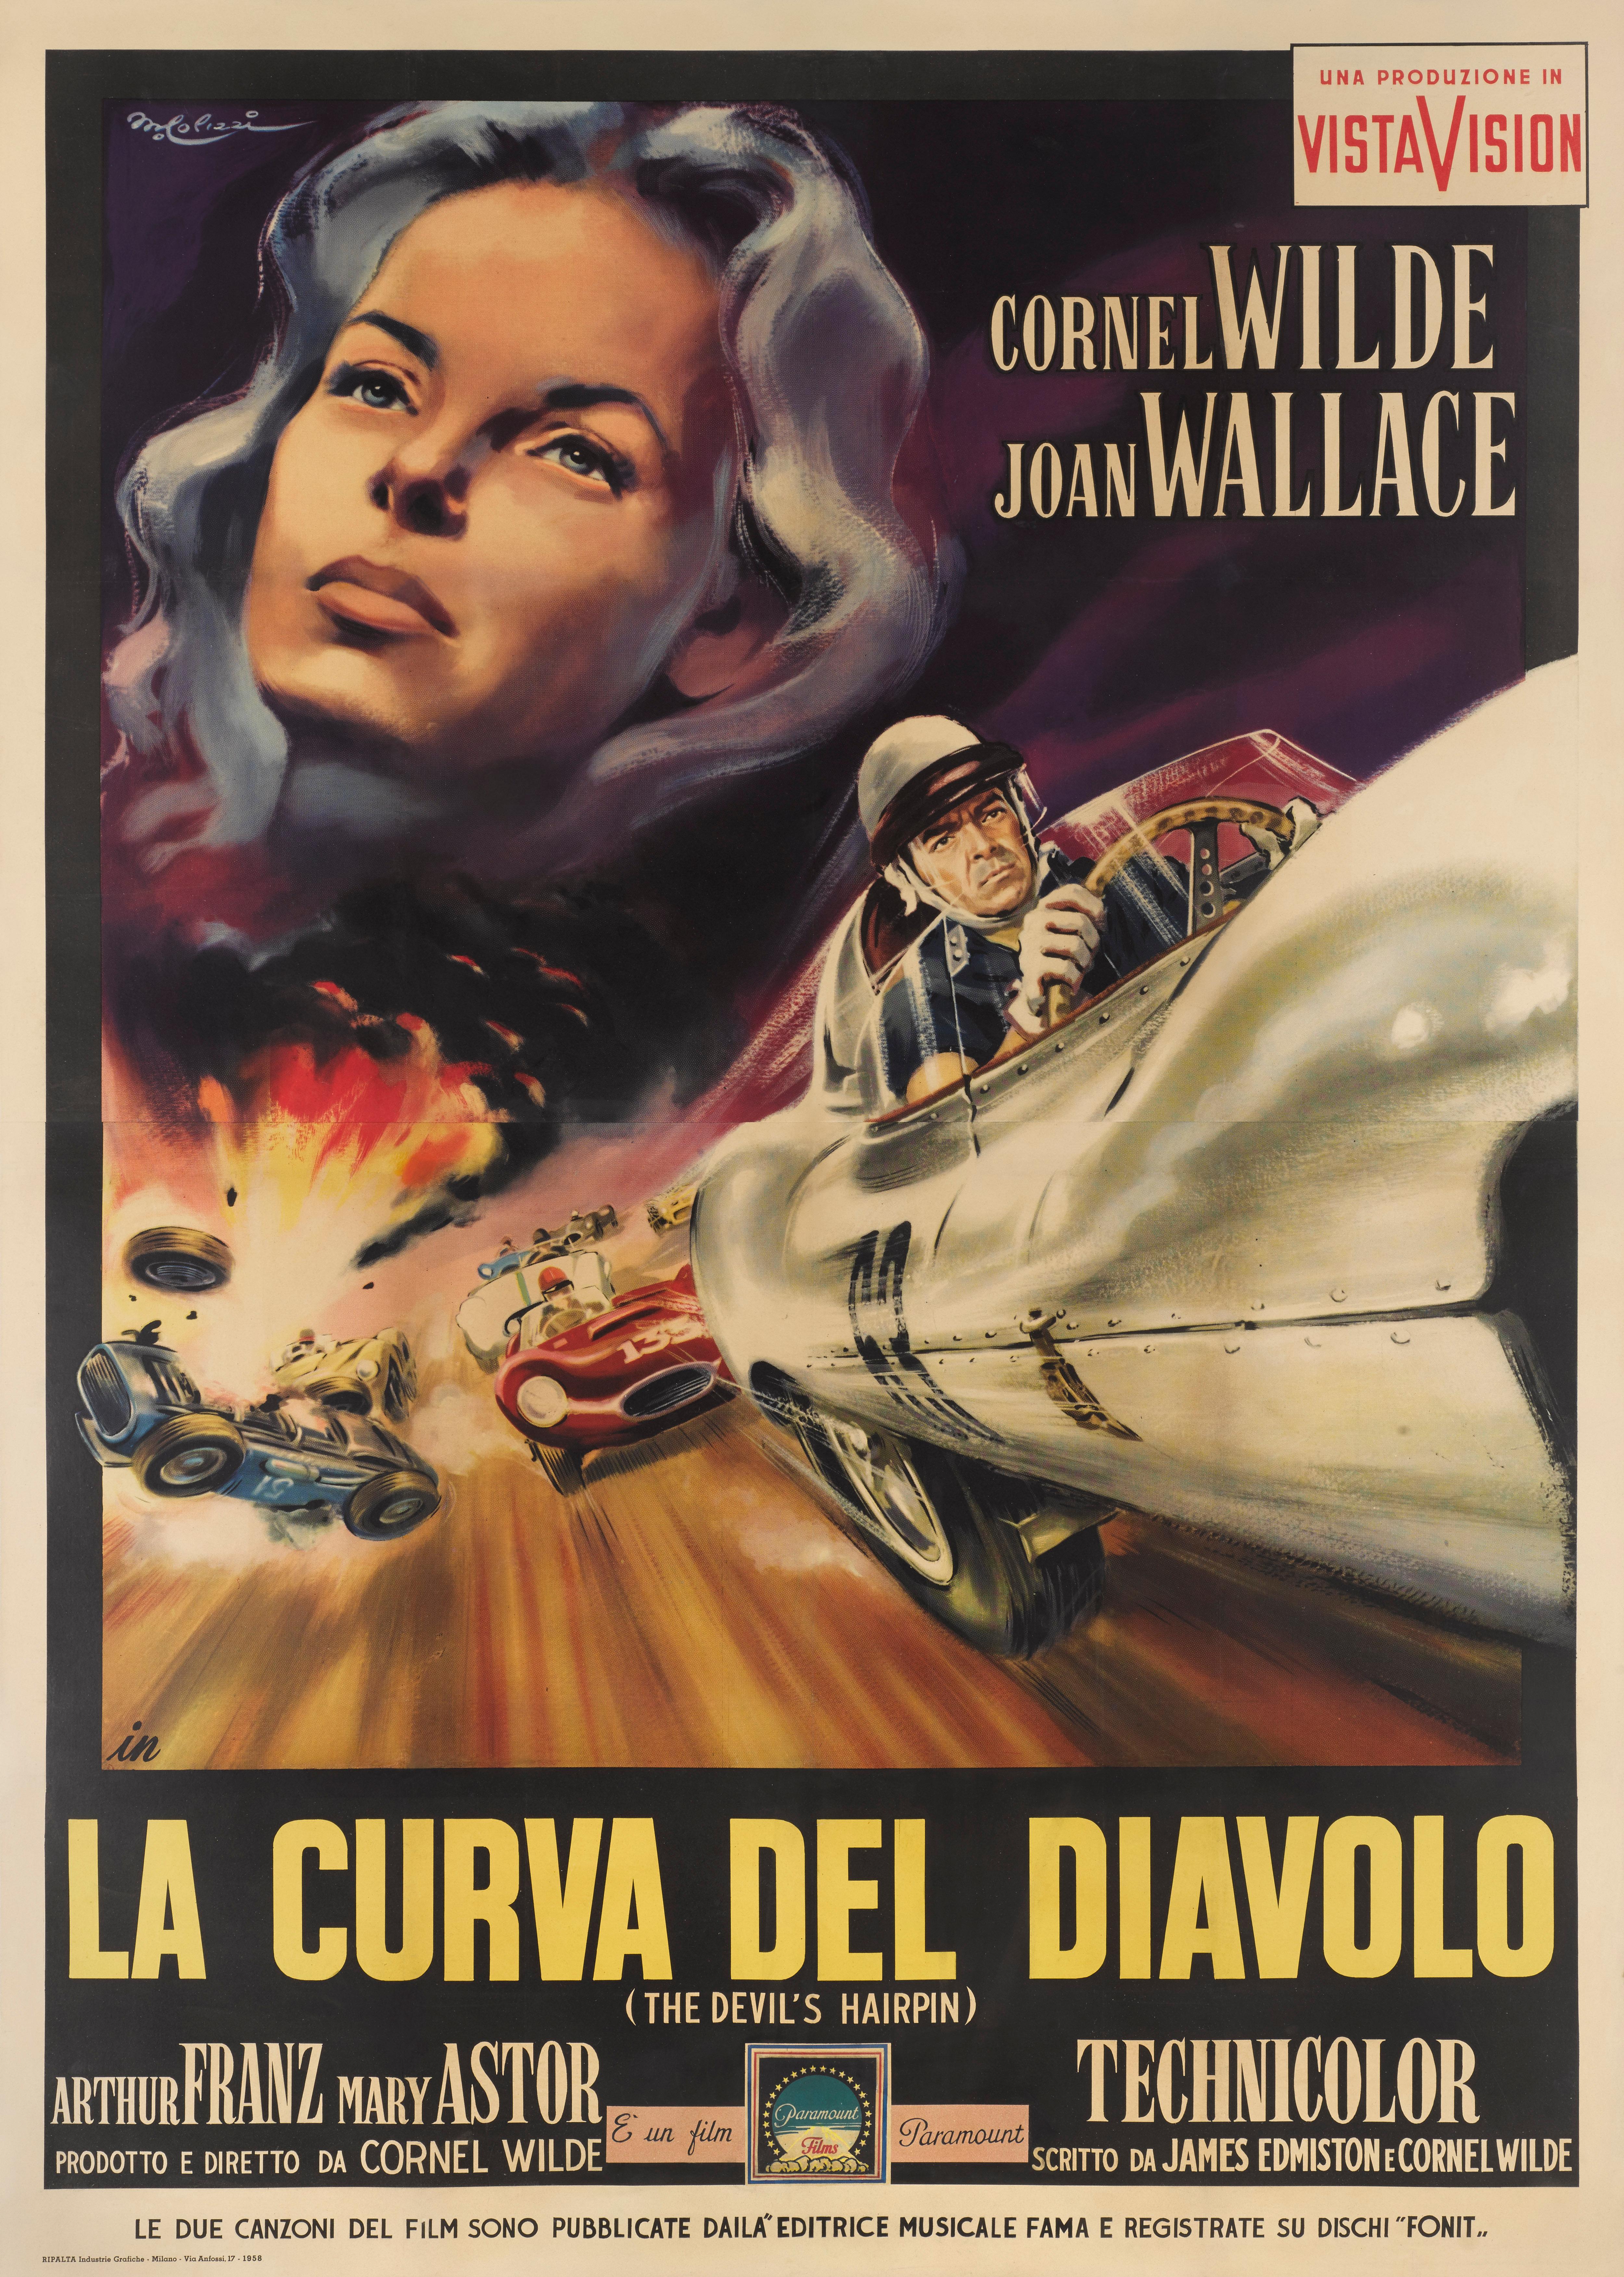 Originales italienisches Filmplakat für Die Haarnadel des Teufels 1957.
Dieser Film wurde von Cornel Wilde geschrieben, der auch Regie führt und die Hauptrolle spielt. In dem Film geht es um einen Rennfahrer im Ruhestand, der von einem neuen